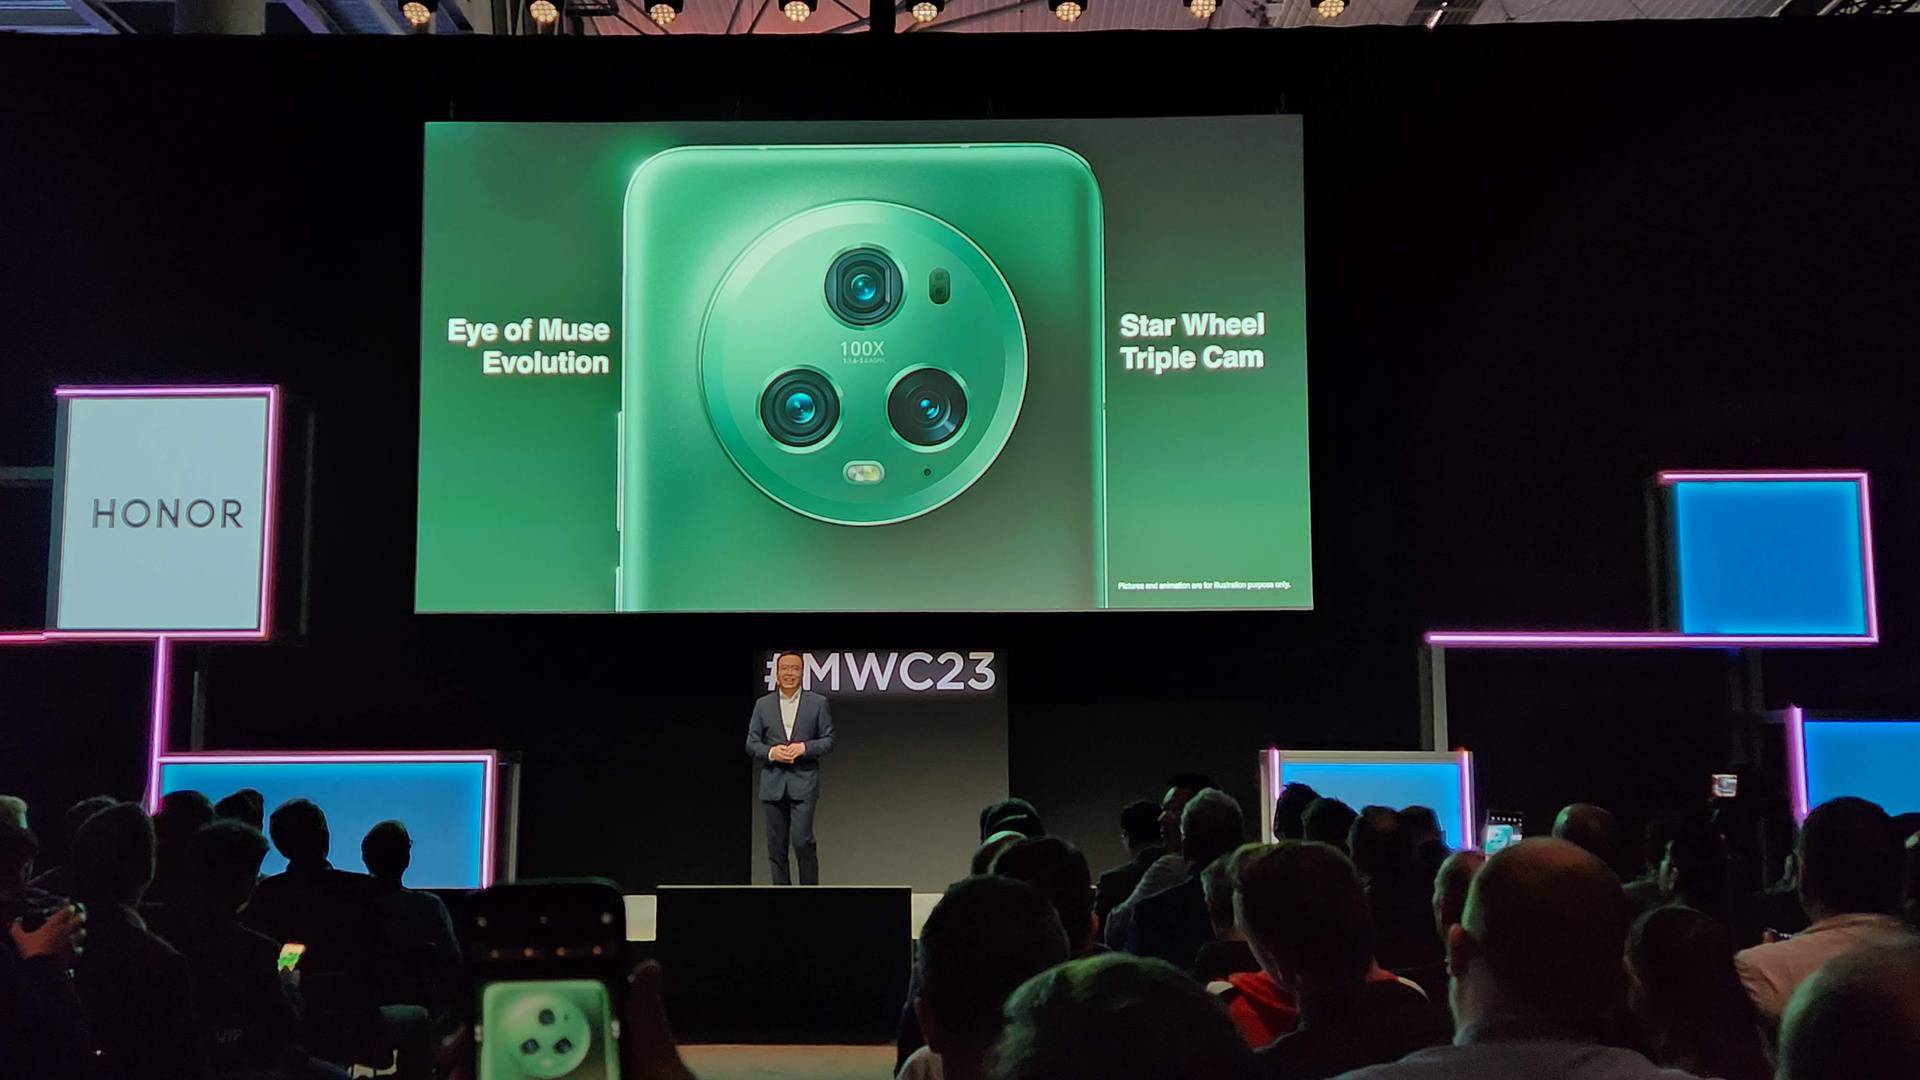 Honor Magic5 Pro je novi 'kralj' kamera, a jeftiniji Magic5 Lite dobio je super izdržljivu bateriju